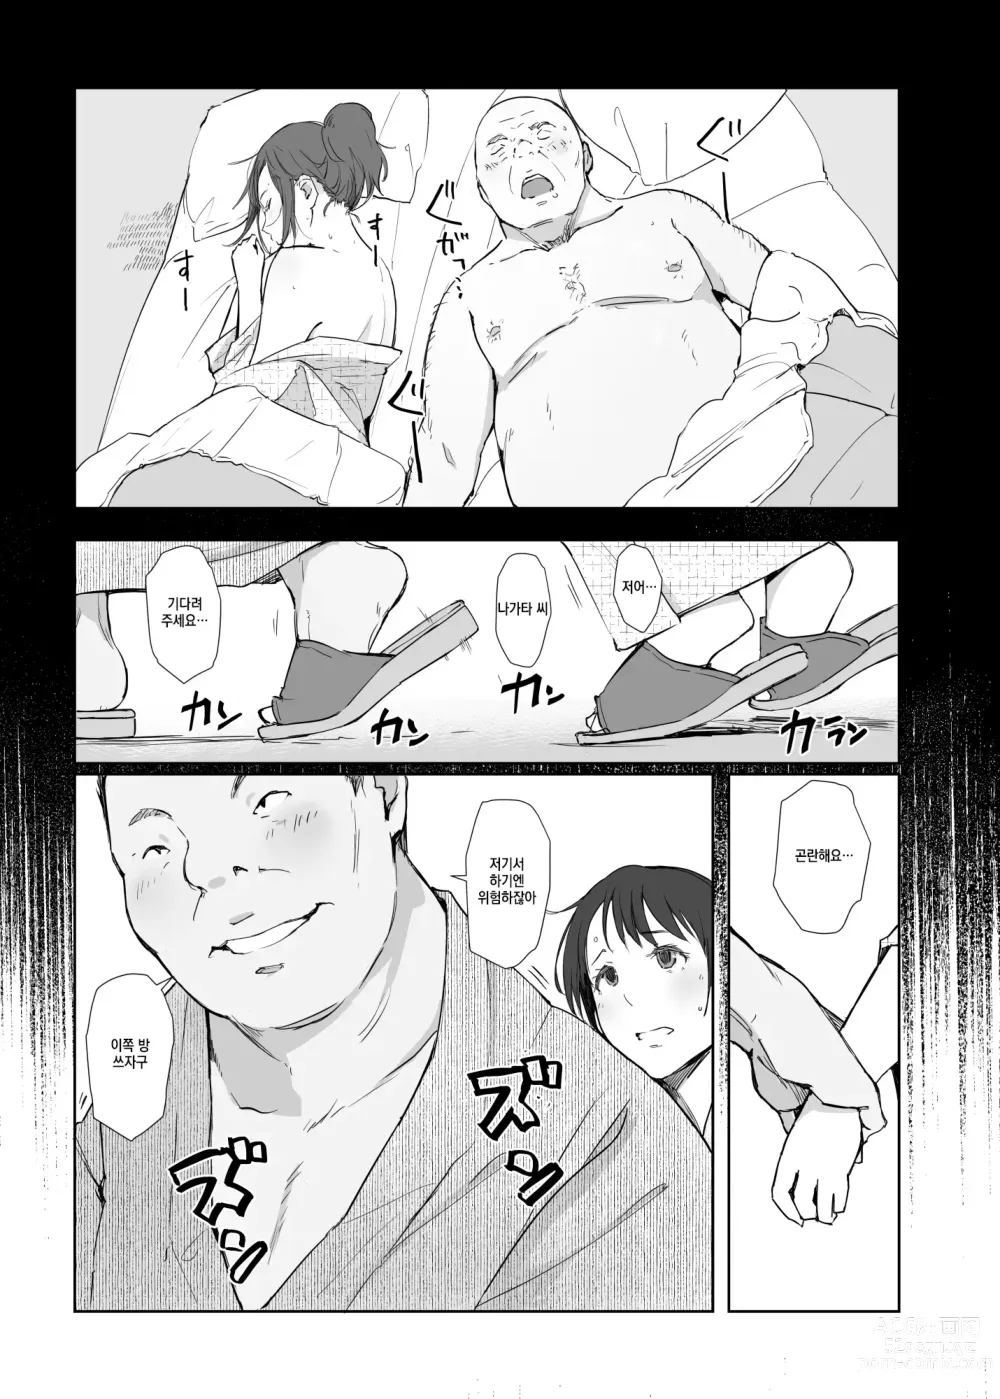 Page 4 of doujinshi 네토라레 당한 유부녀와 네토라레 당하는 유부녀 4